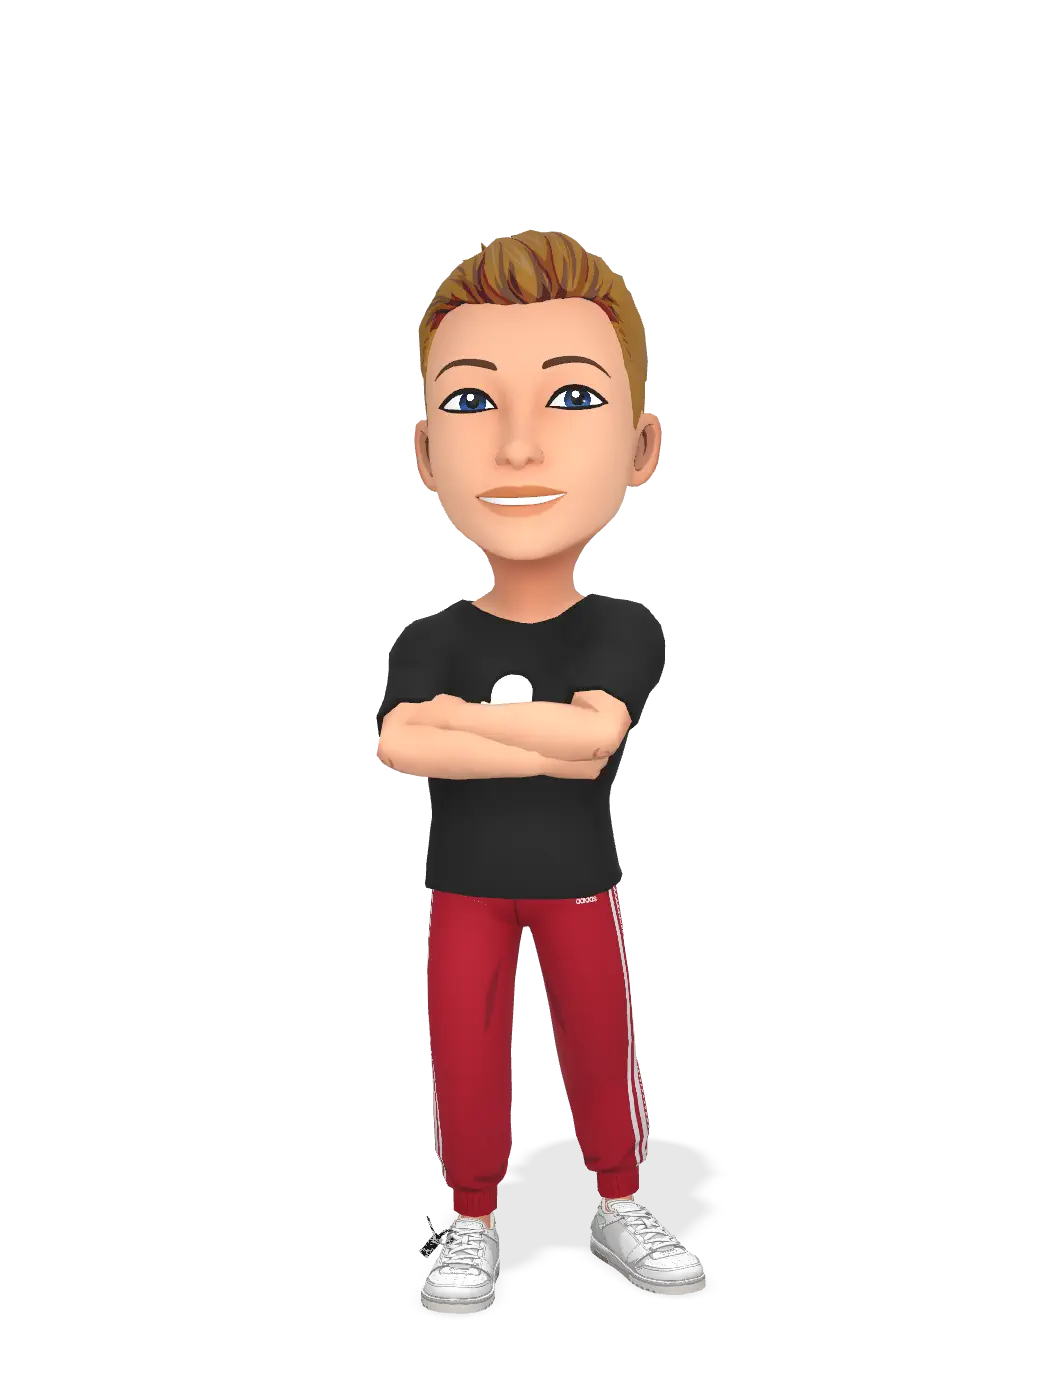 3D Bitmoji for xkxxhhx avatar